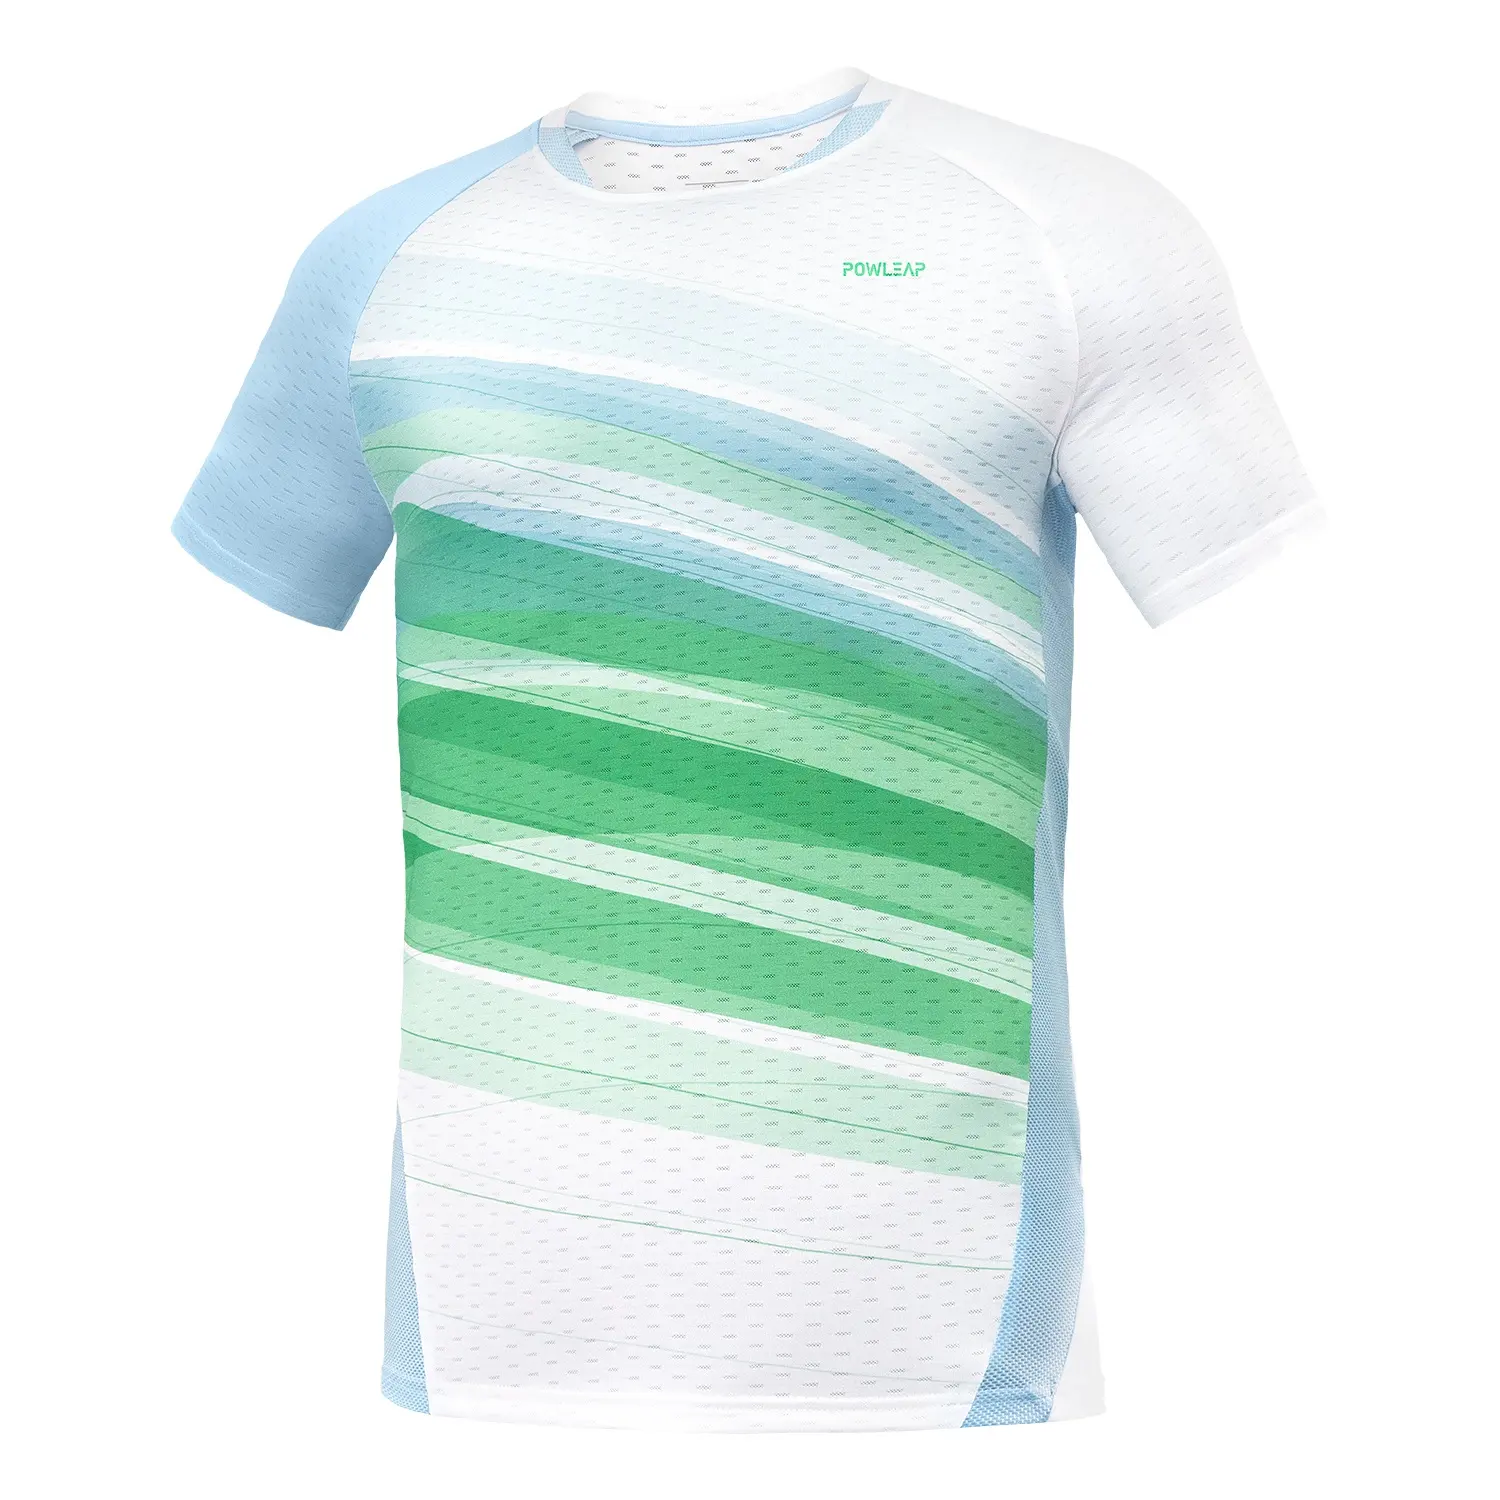 Camisa personalizada do esporte do badminton do logotipo A roupa exterior unisex do tênis de mesa do exercício imprime o desgaste seco rápido